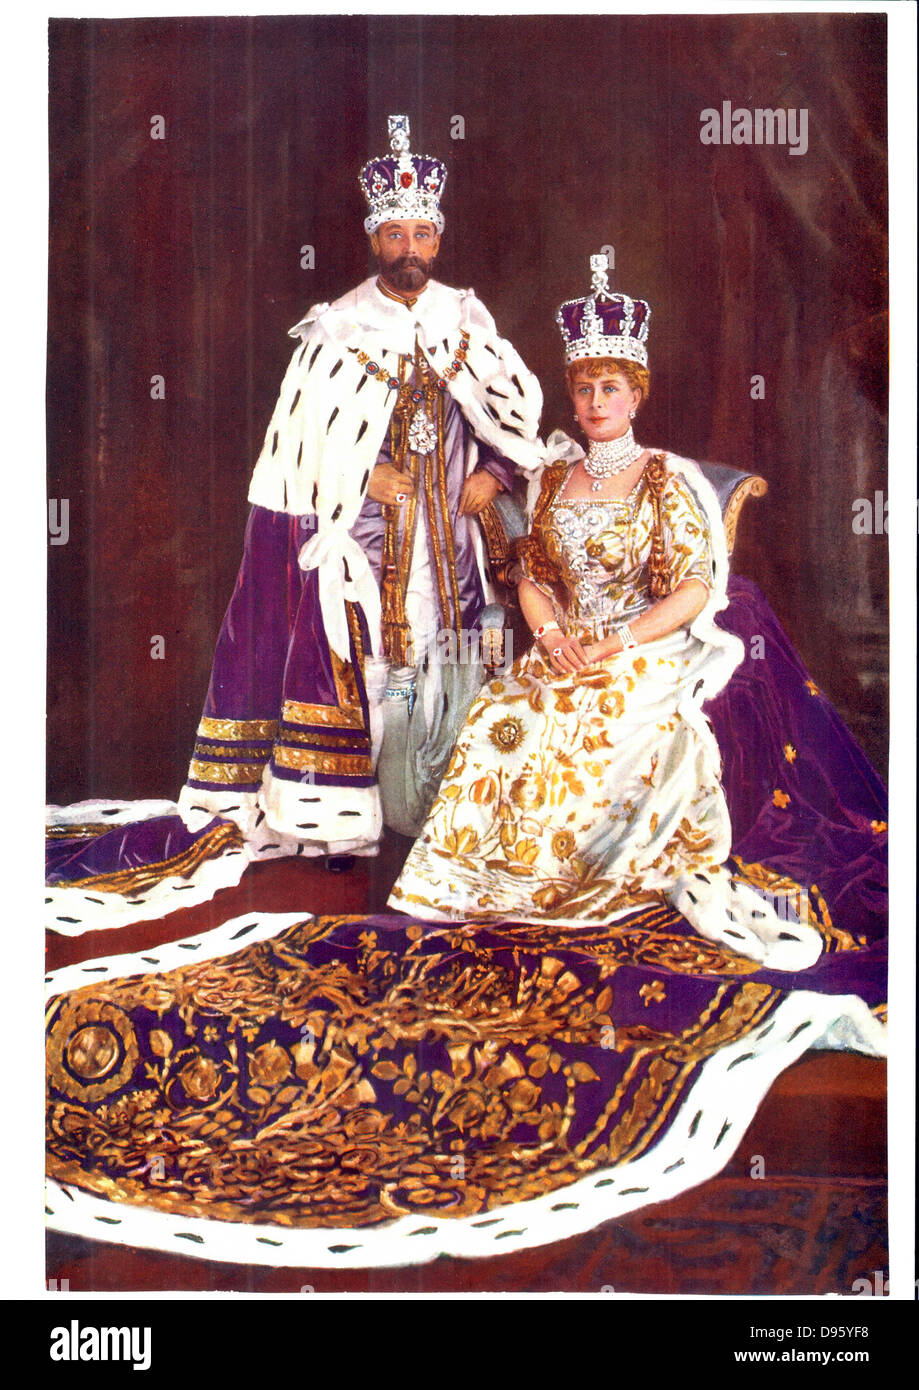 Georg v., König von Großbritannien 1910-1936, mit seiner Gemahlin Königin Mary in Krönung Bademäntel, 1911. Stockfoto